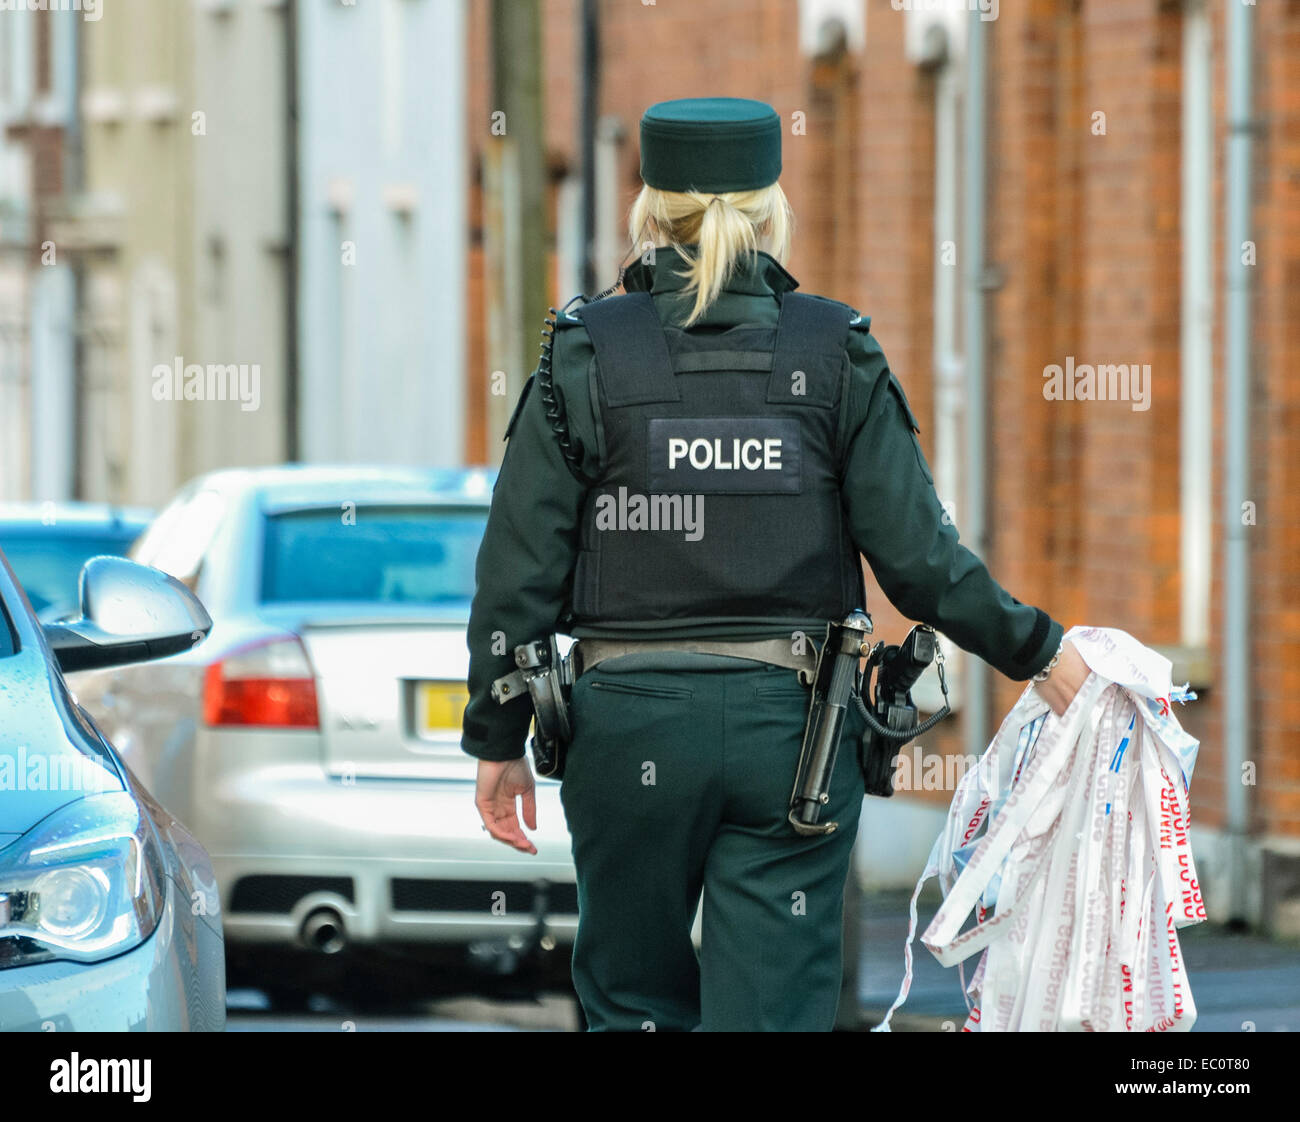 Belfast, Irlande du Nord. 7 décembre 2014 - Un agent de police enlève la bande de cordon à l'extérieur de la maison où un incident domestique a entraîné un homme de 21 ans à être mortellement poignardé tard la nuit dernière. Deux hommes (21 et 25) et une femme (25) ont été arrêtés. Banque D'Images